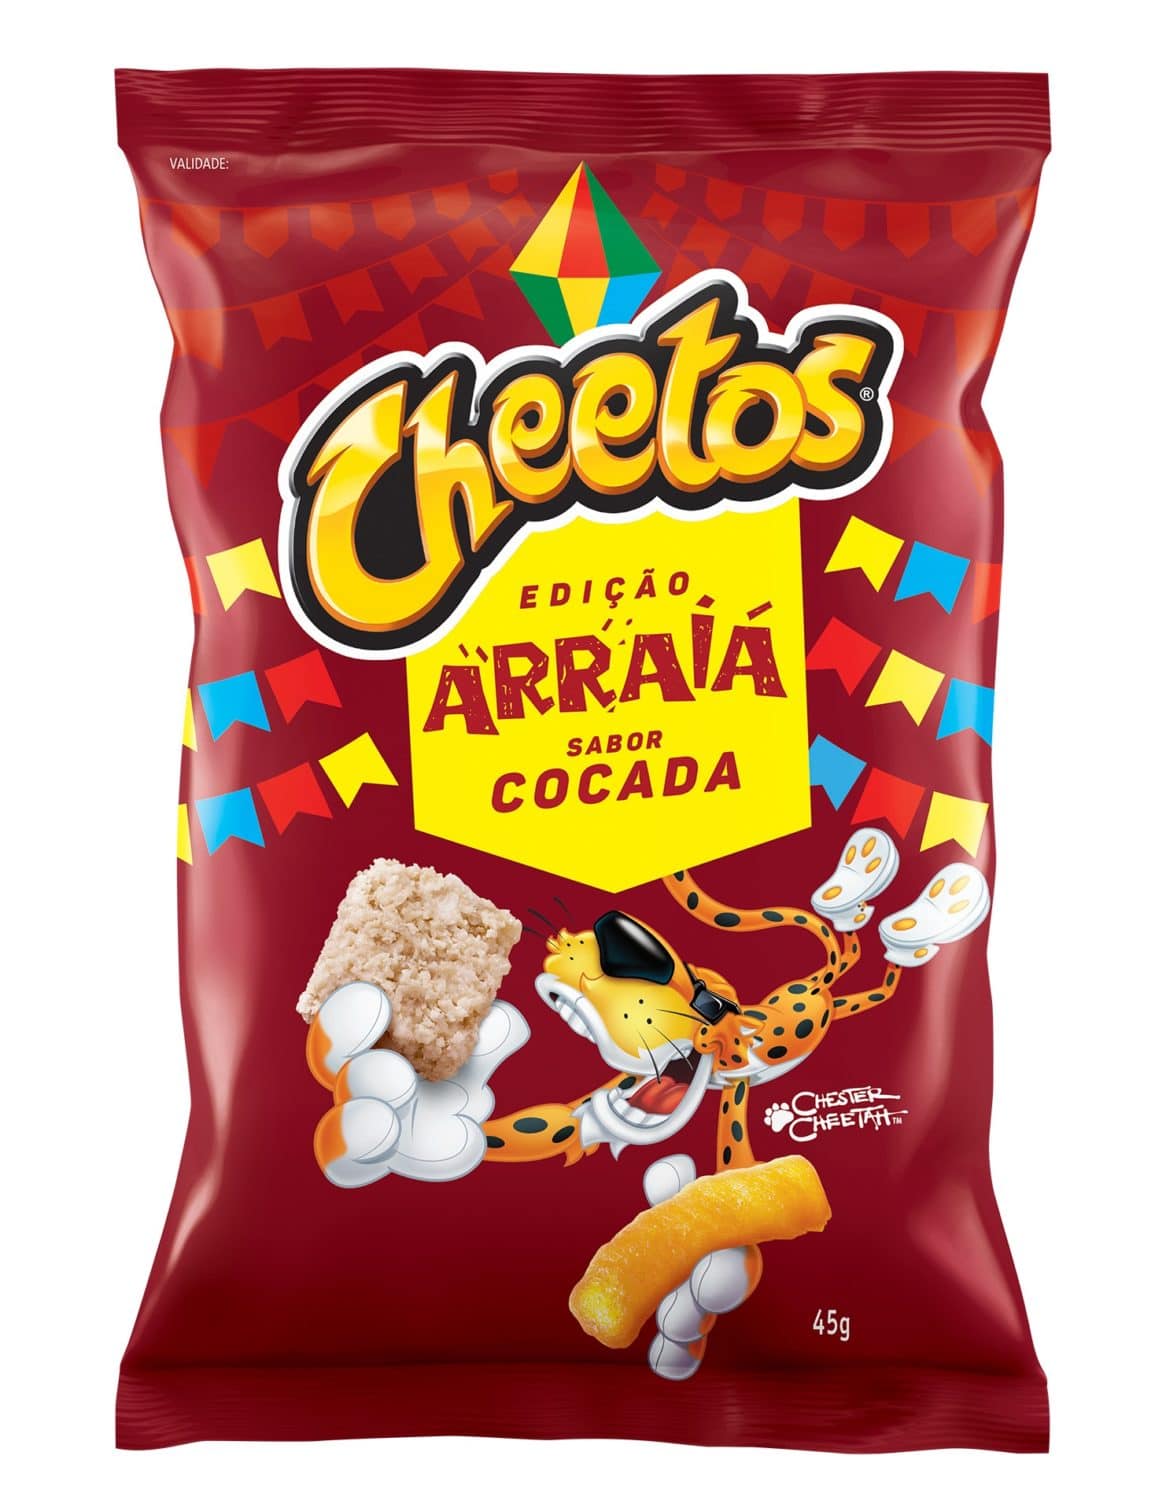 Cheetos lança salgadinhos edição 'arraiá' com sabores Cocada e Milho na  Manteiga - GKPB - Geek Publicitário